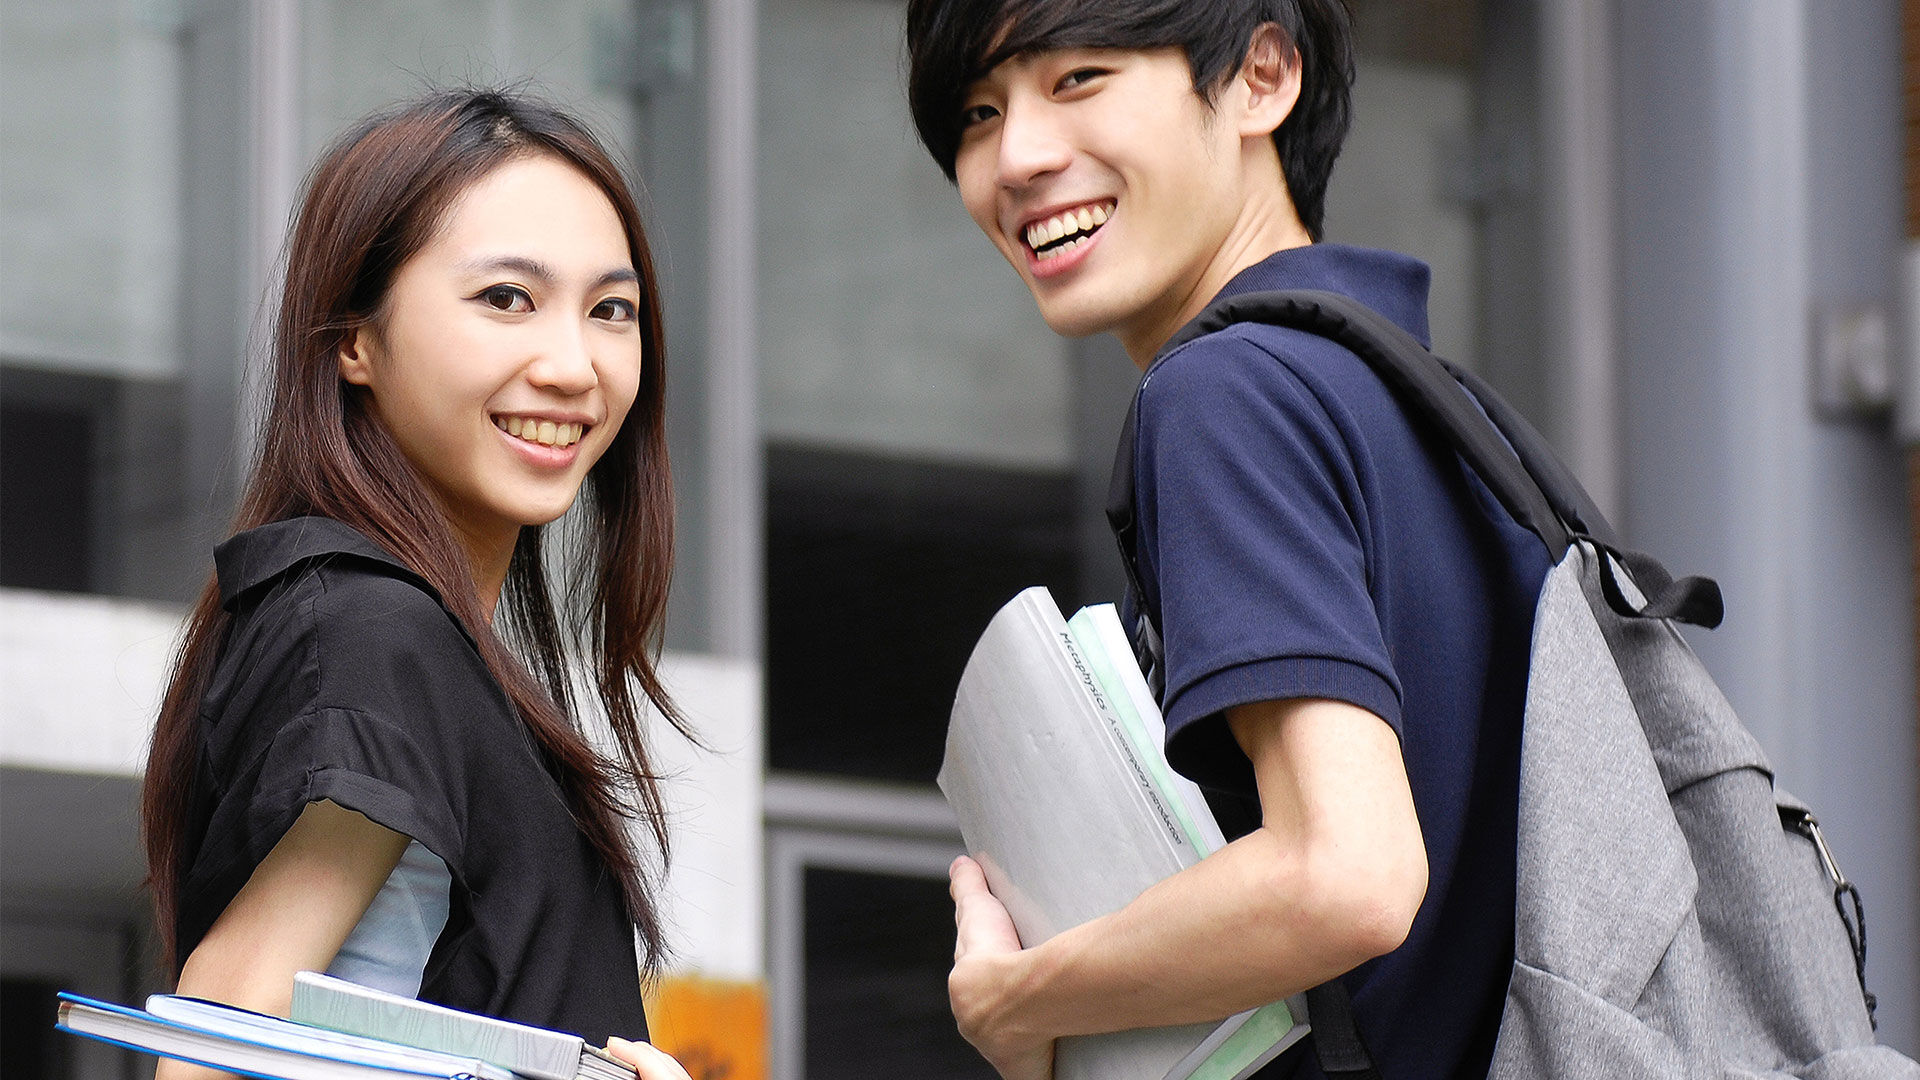 Deux étudiants joyeux avec des sacs à dos et des livres de cours marchent à l'extérieur d'un bâtiment universitaire.